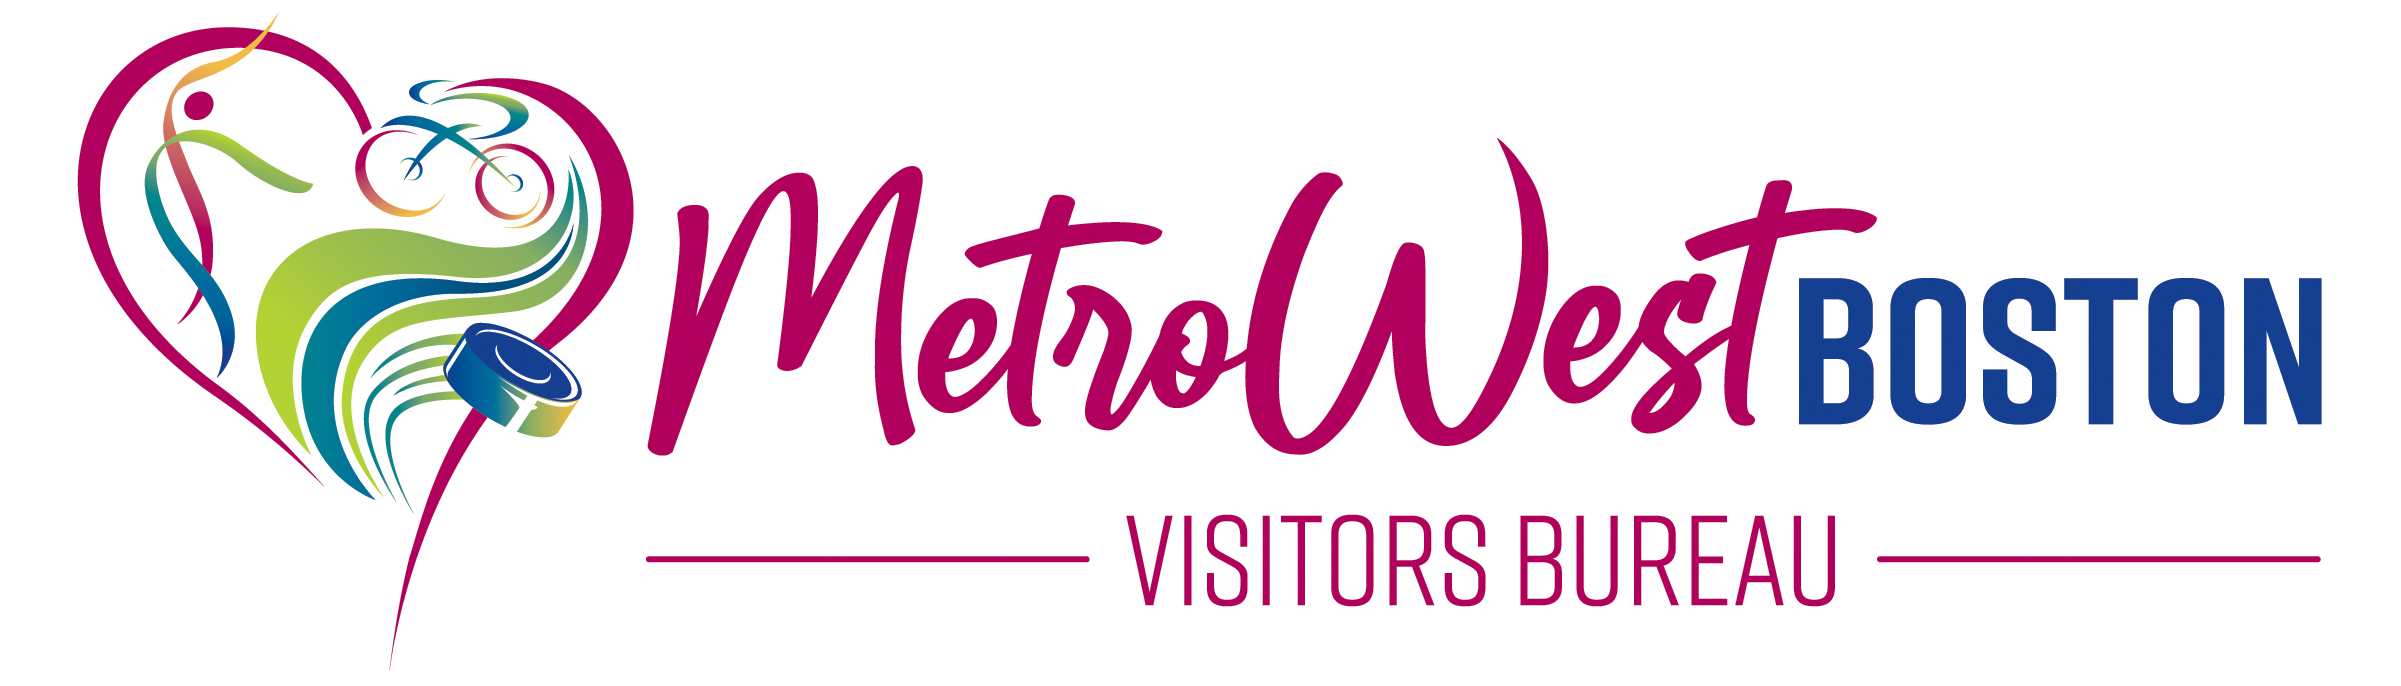 Events » MetroWest Boston Visitors Bureau